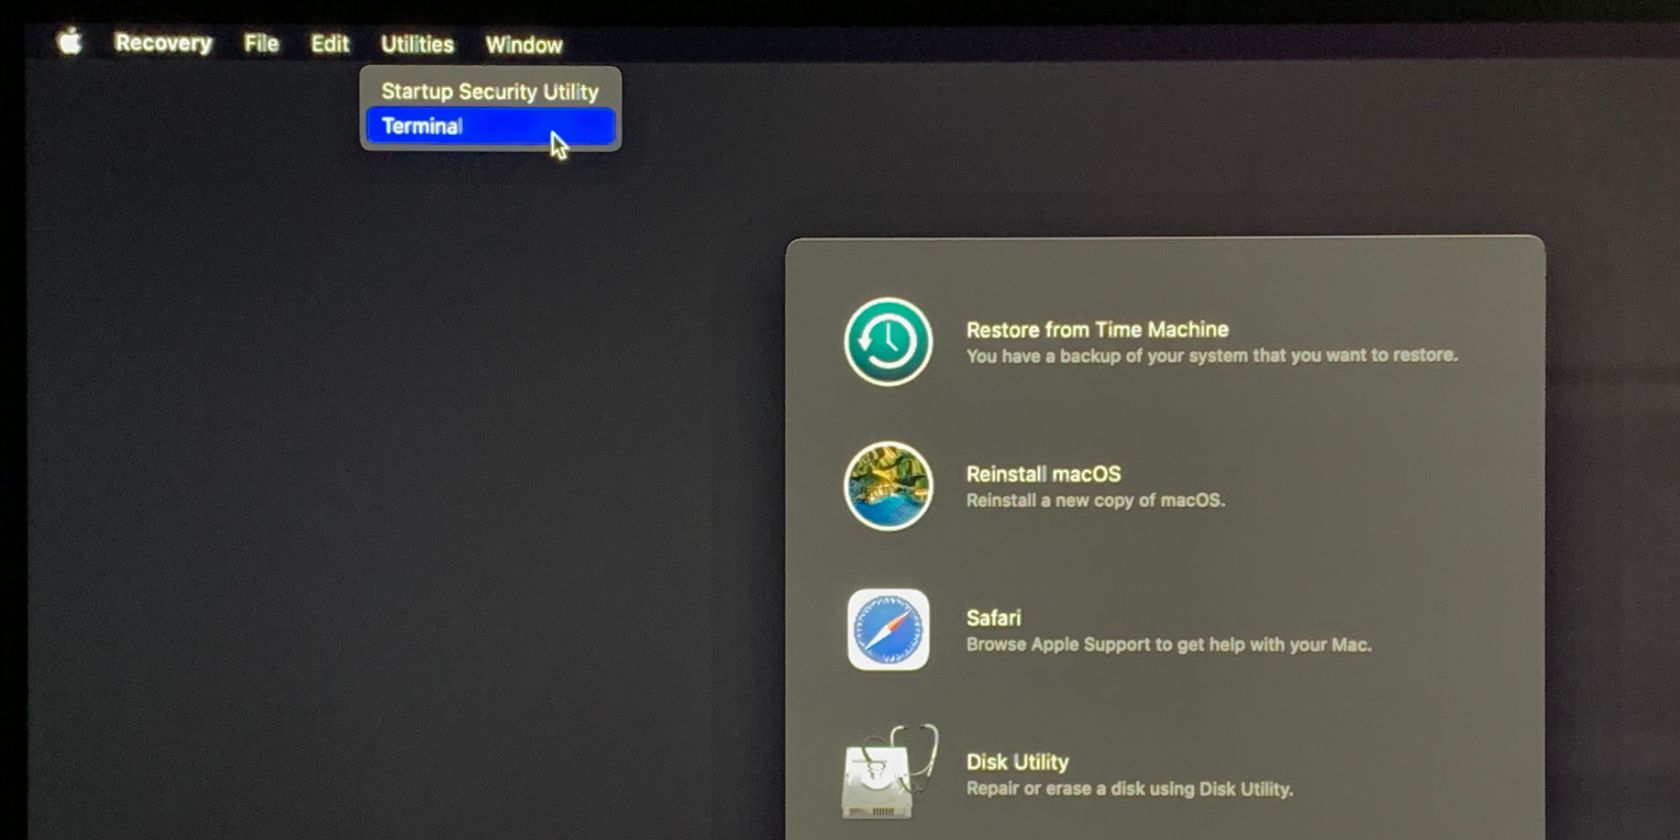 Terminal option in macOS Recovery - Come aprire il terminale su un Mac